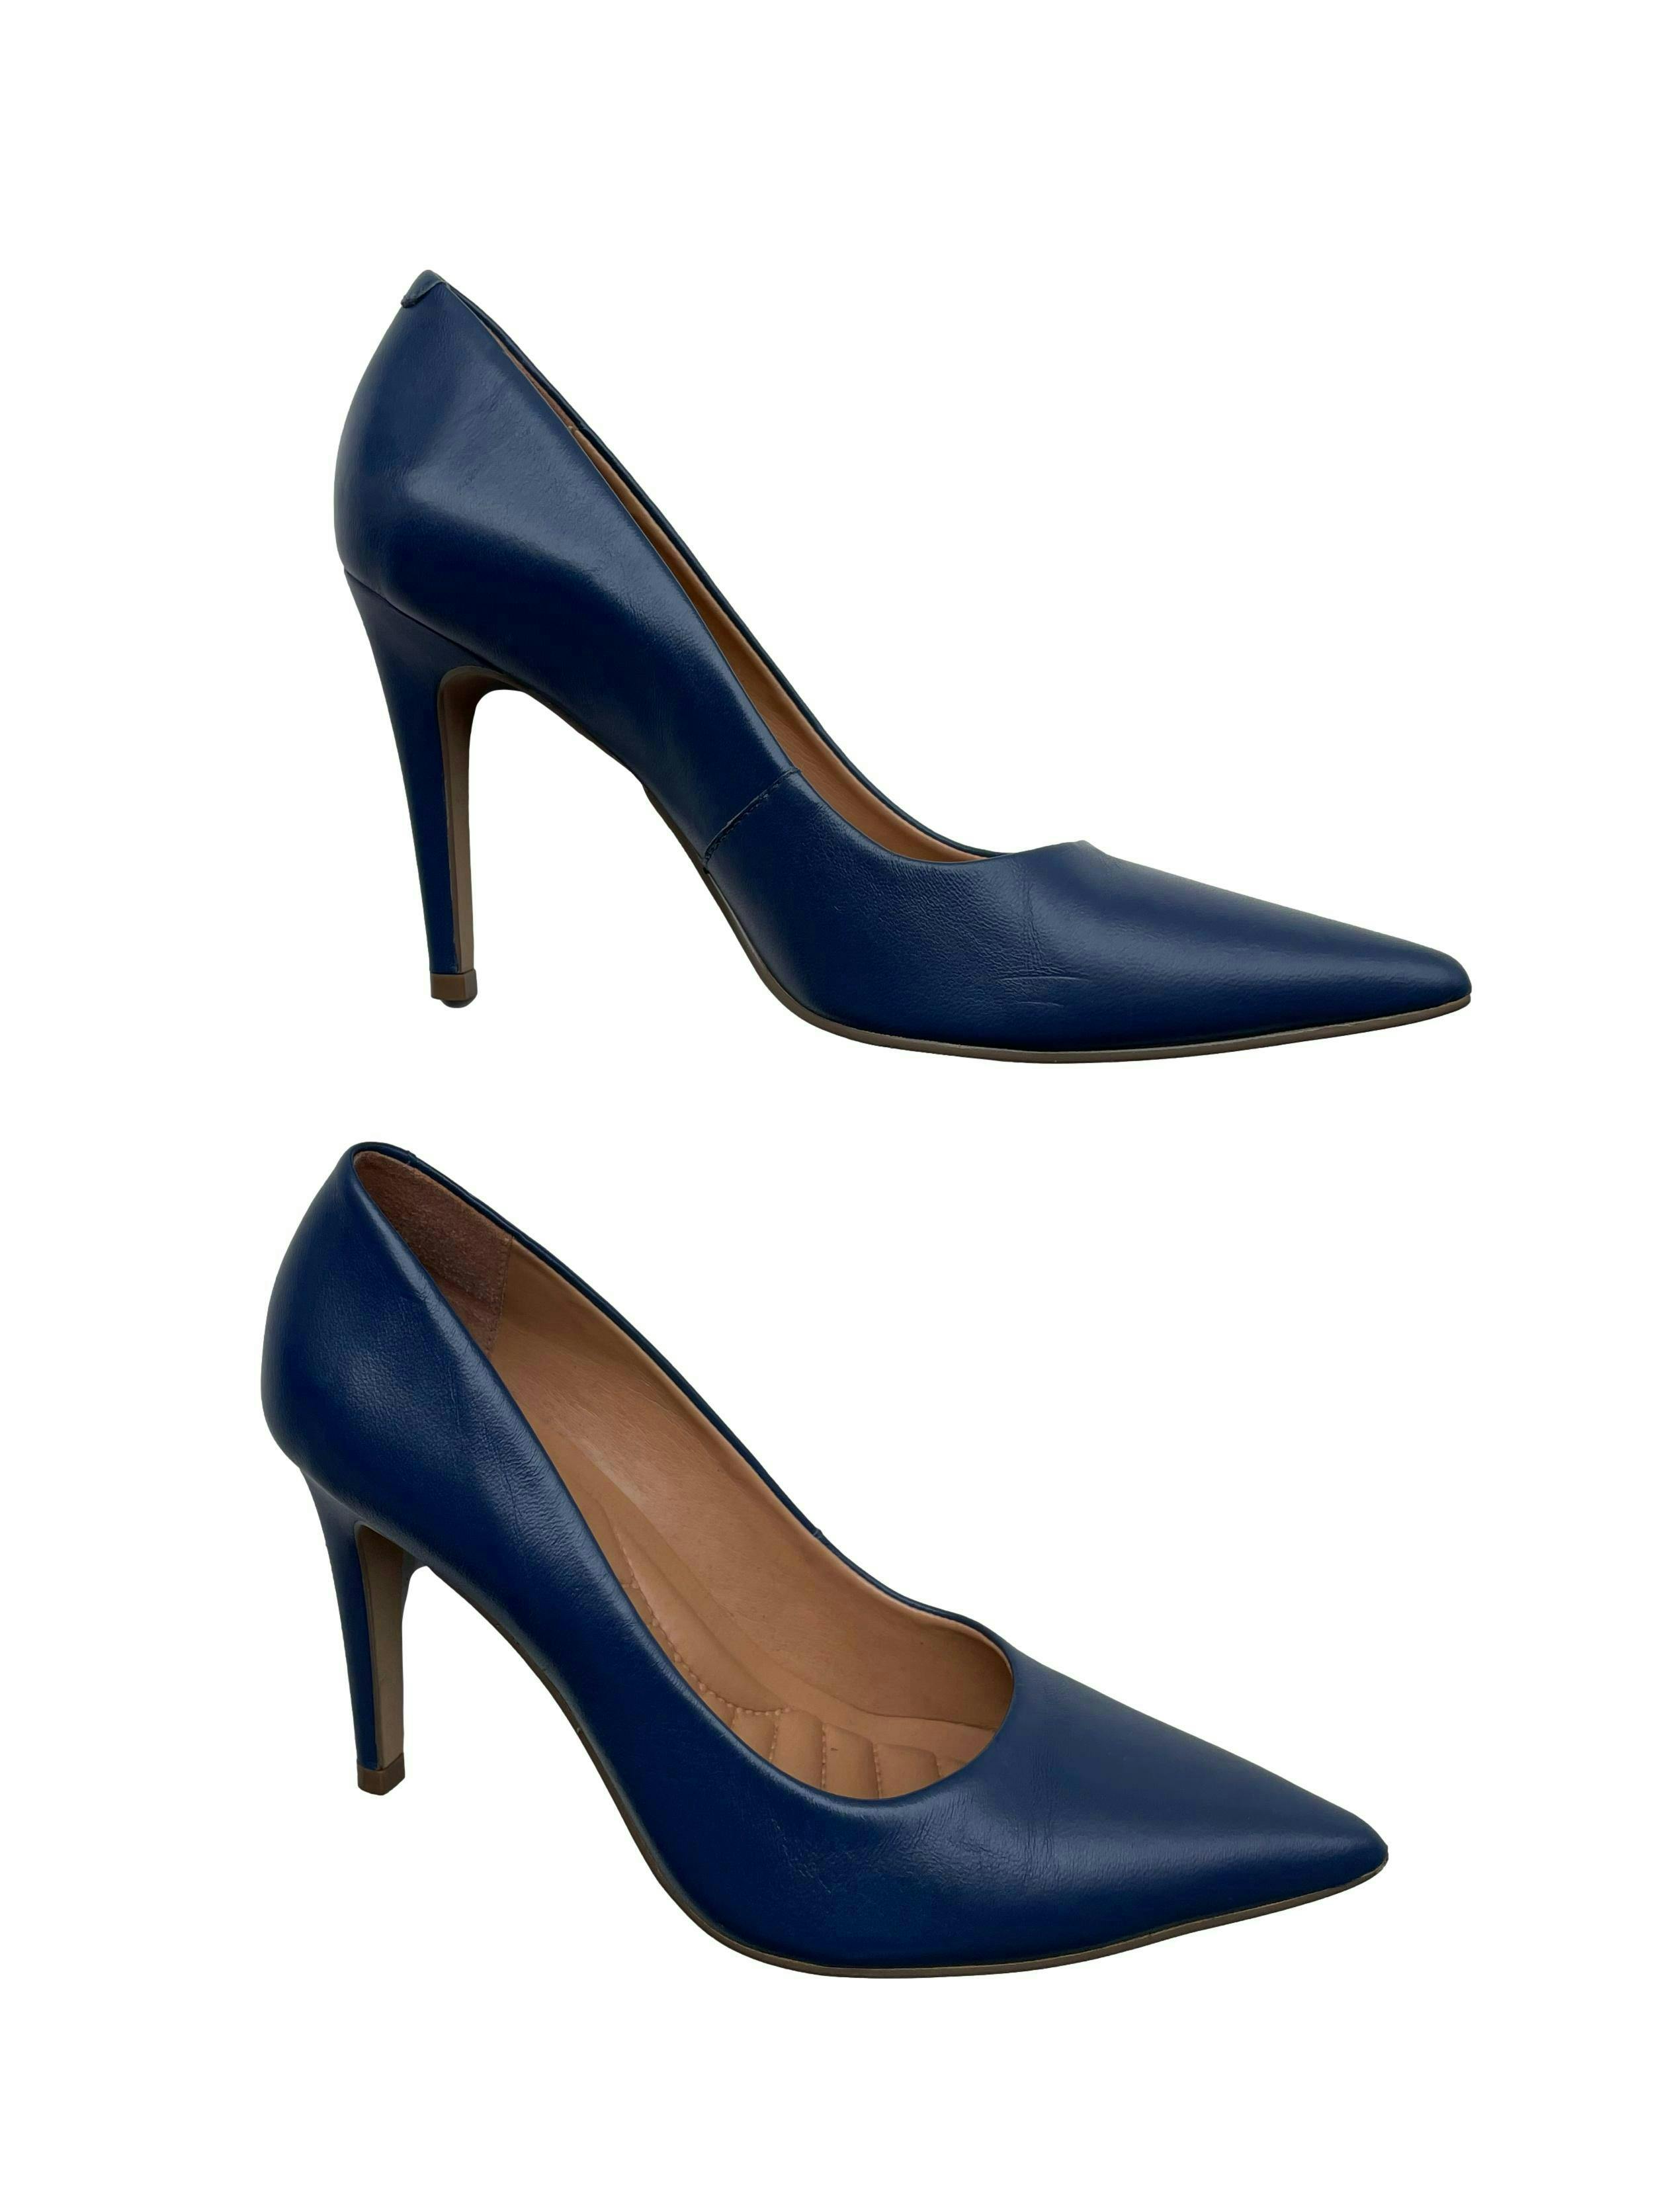 Zapatos Bruno Ferrini azules de cuero, modelo en punta, taco 9cm. Estado 9/10. Precio original S/ 300